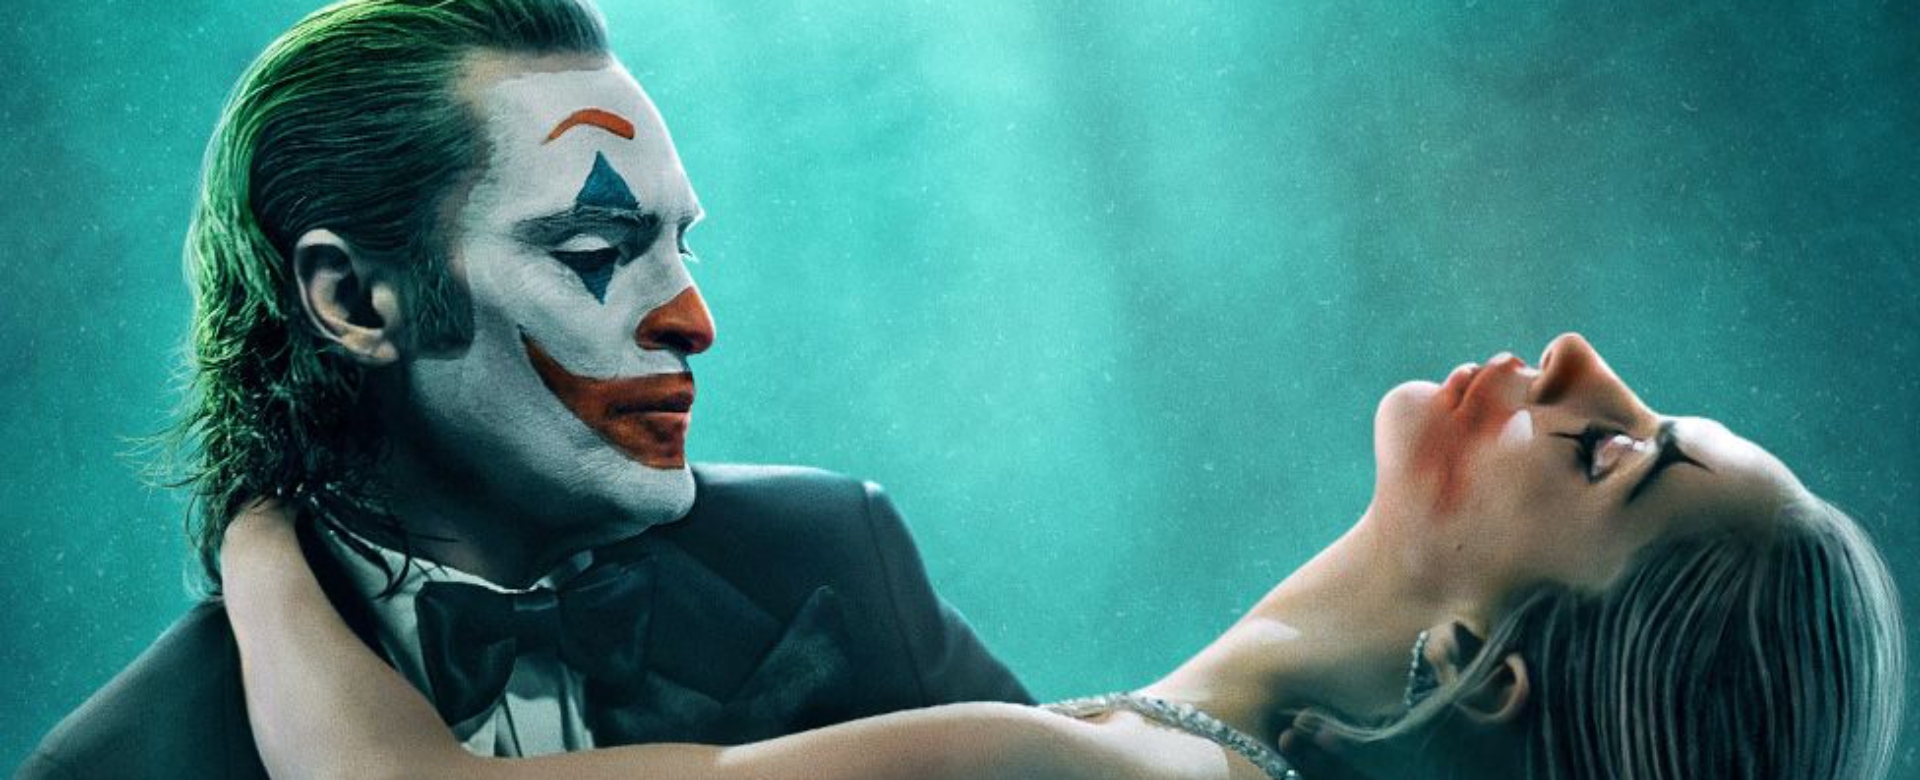 “Joker: Folie à Deux” được dự đoán có khả năng xô đổ kỳ tích 5 năm trước